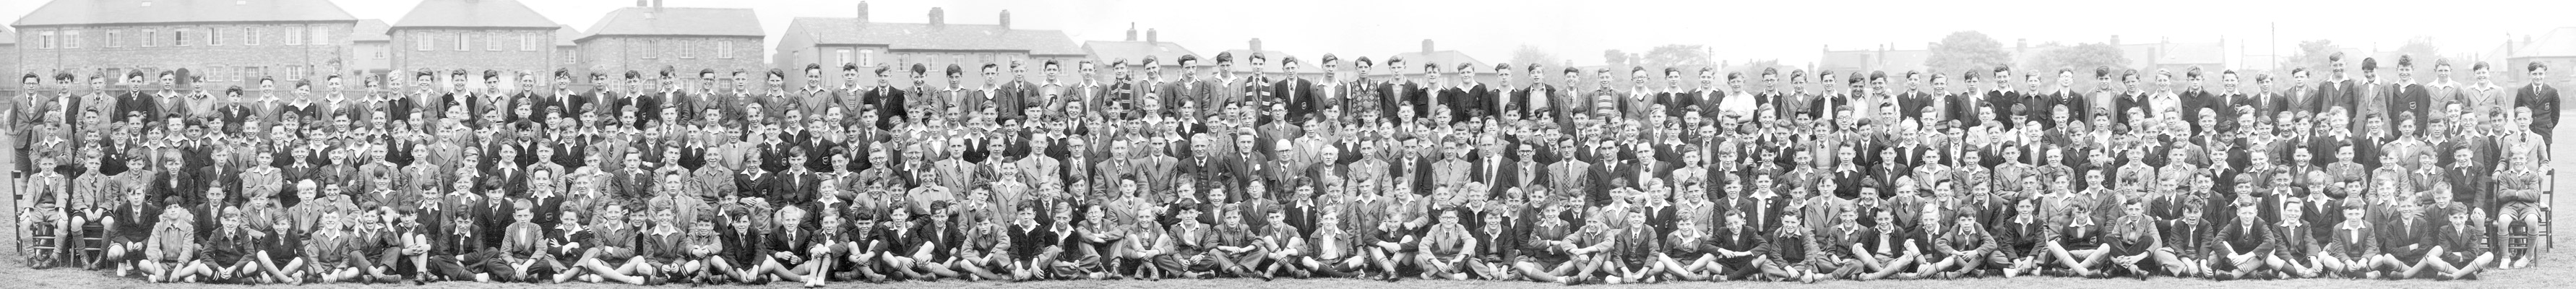 1950/1 - Juniors